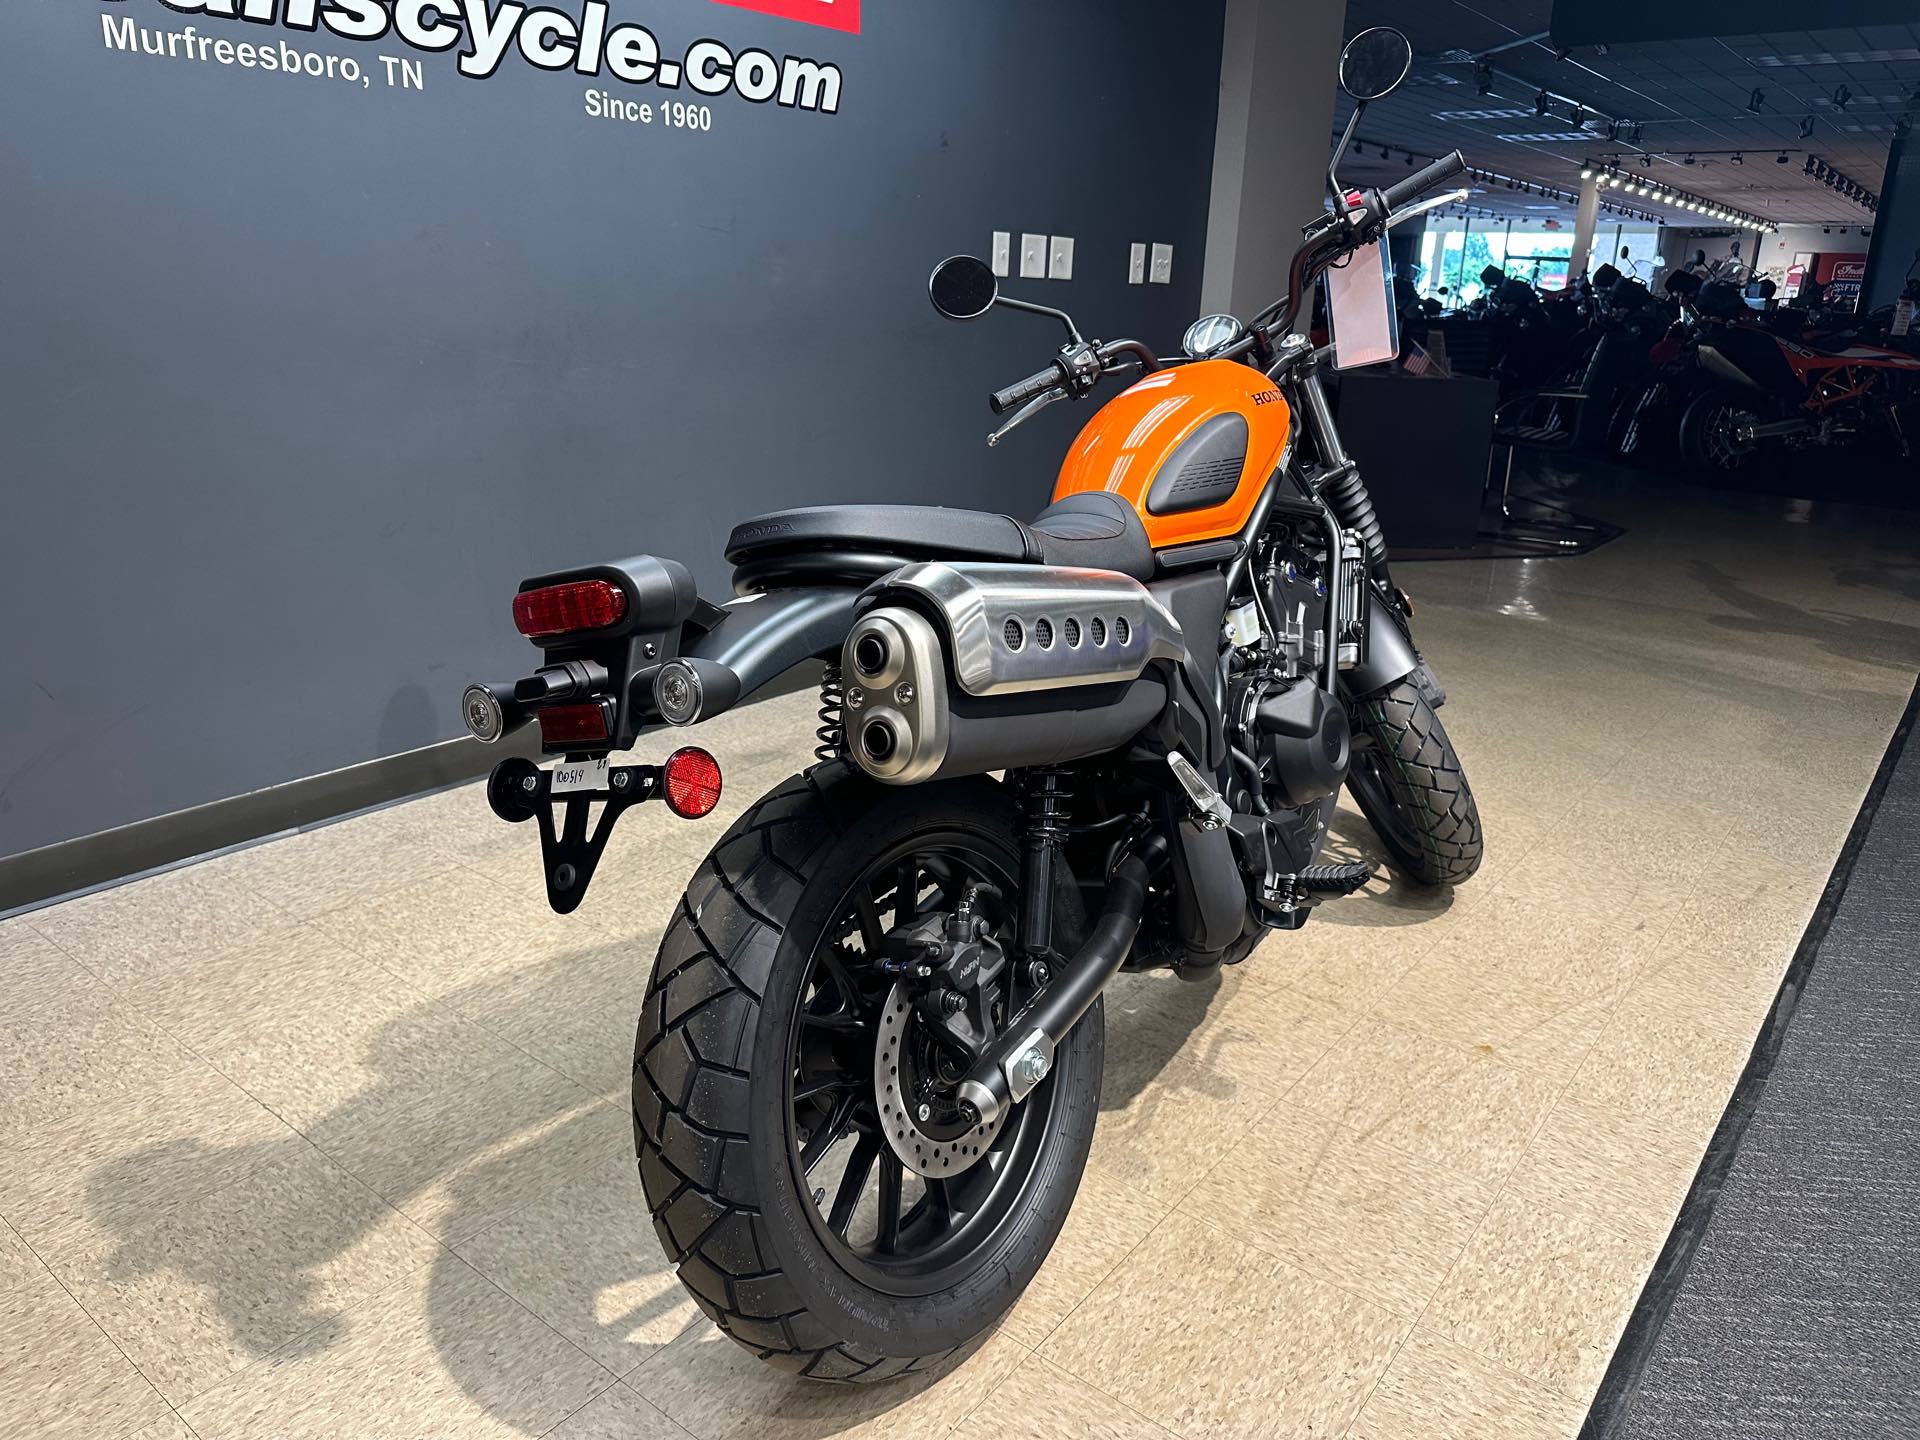 2024 Honda SCL 500 at Sloans Motorcycle ATV, Murfreesboro, TN, 37129